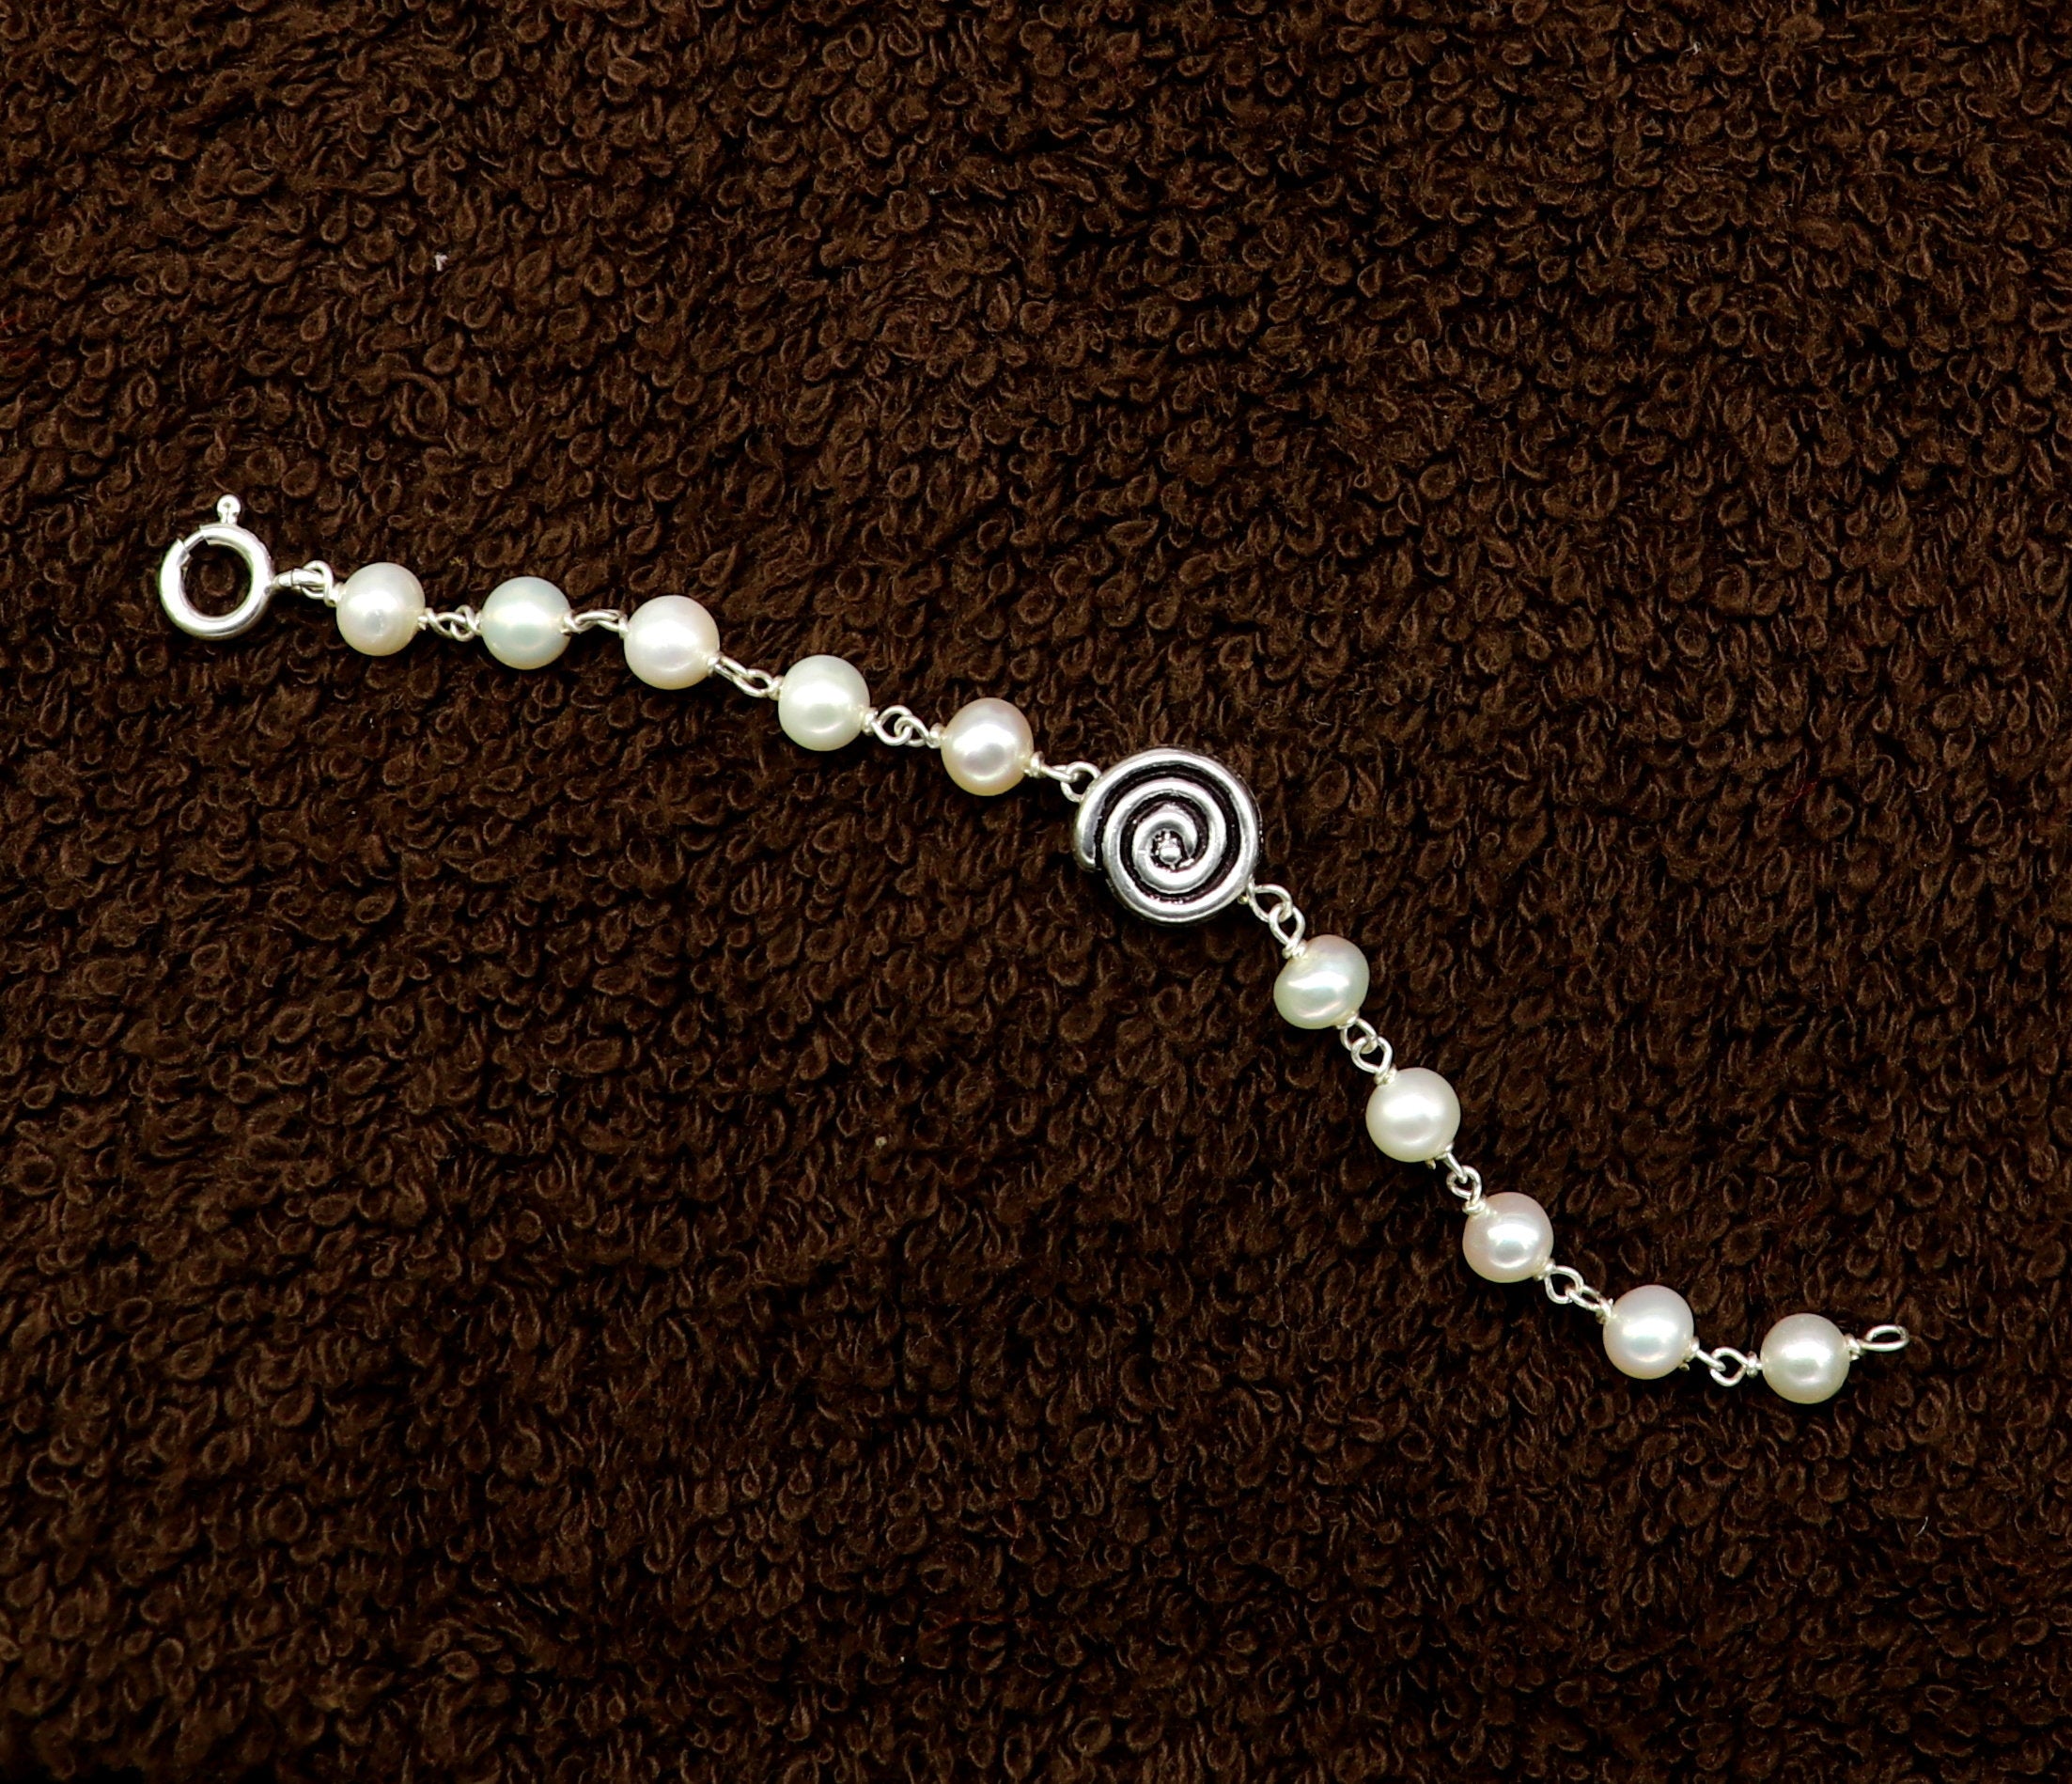 Bracelet making | how to make thread bracelet | handmade pearl bracelet |  friendship band - YouTube